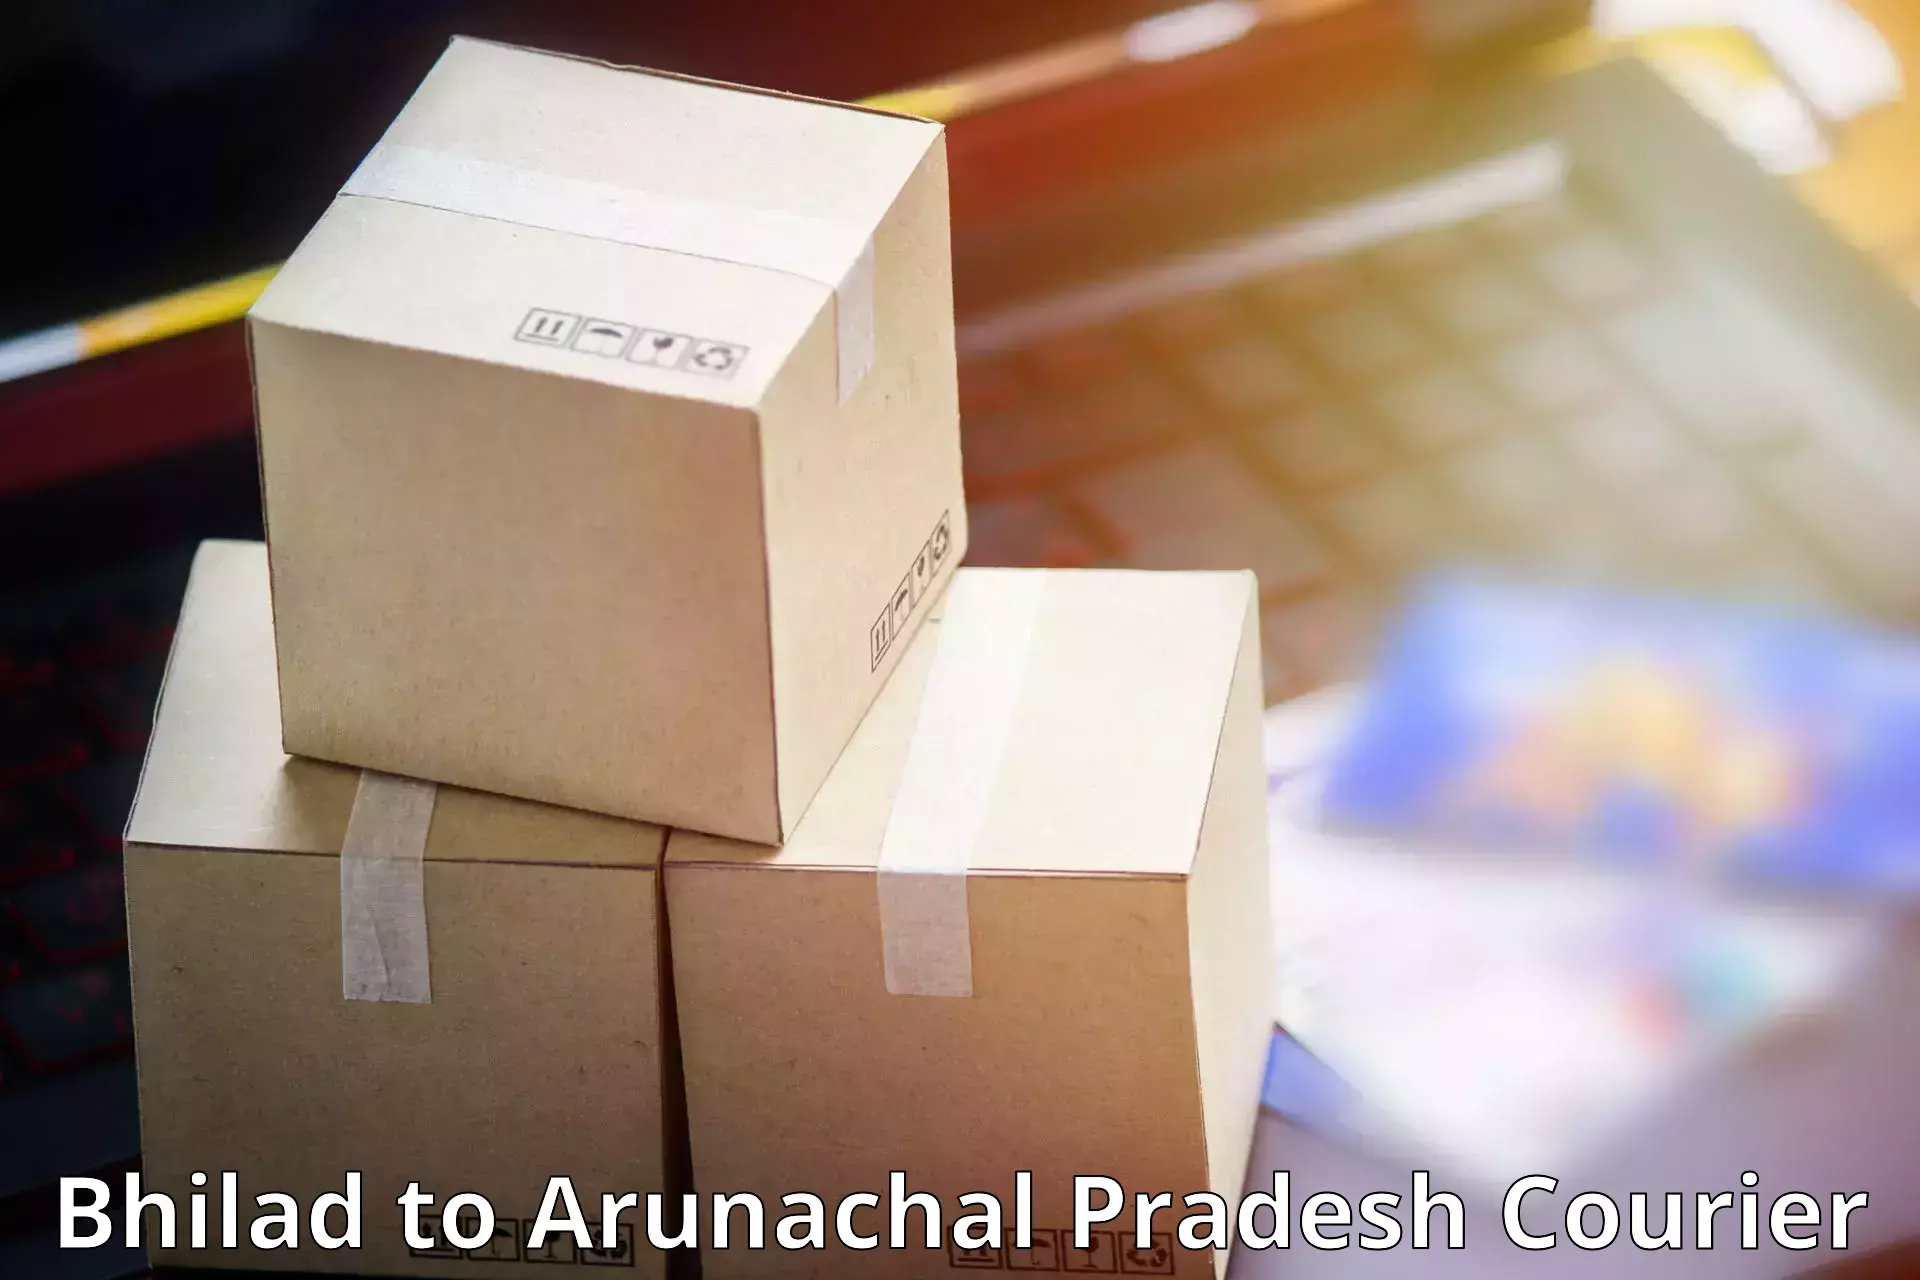 Efficient parcel service Bhilad to Aalo